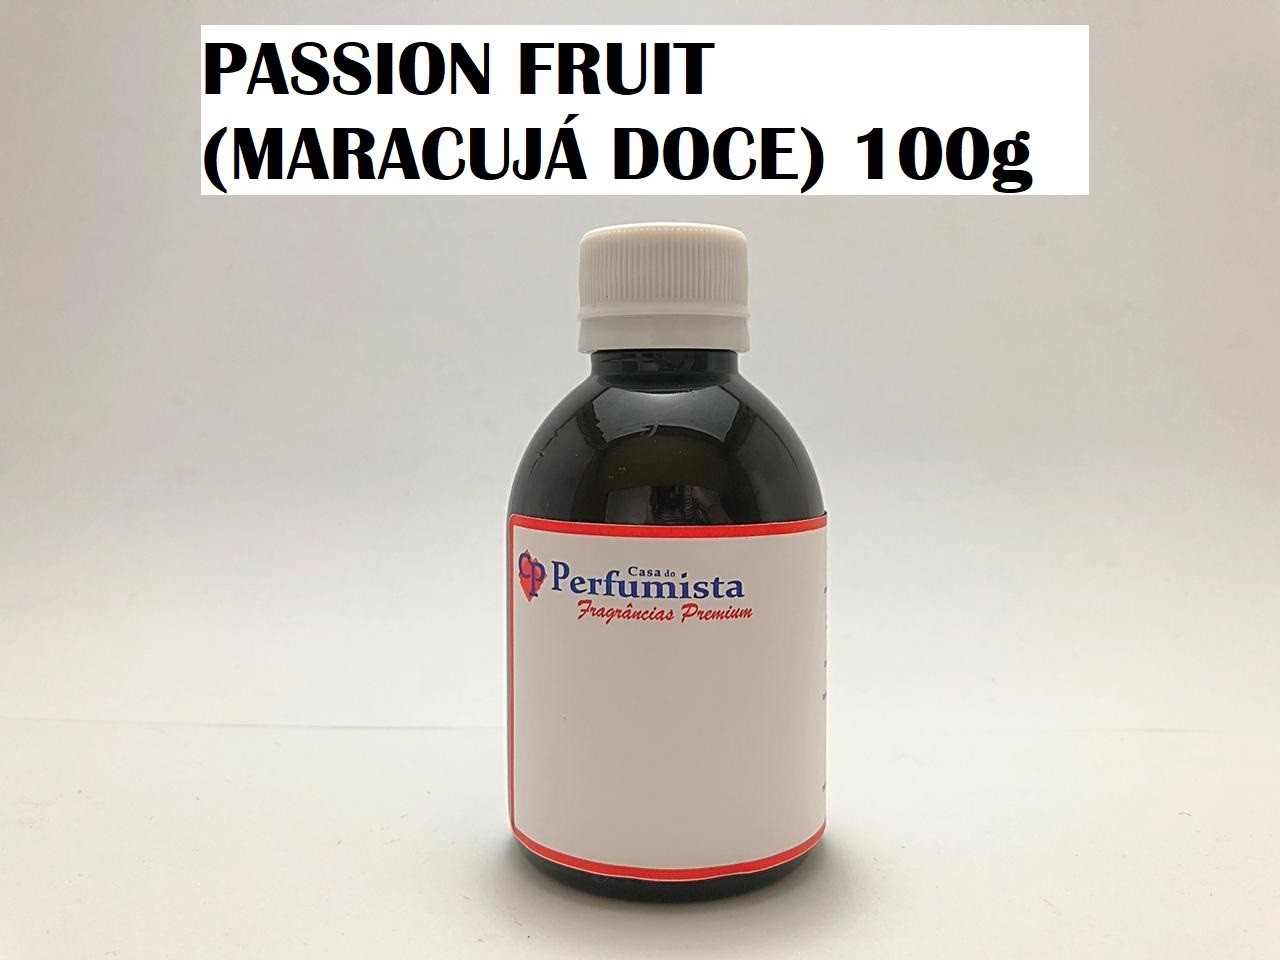 PASSION FRUIT (MARACUJÁ DOCE) - 100g